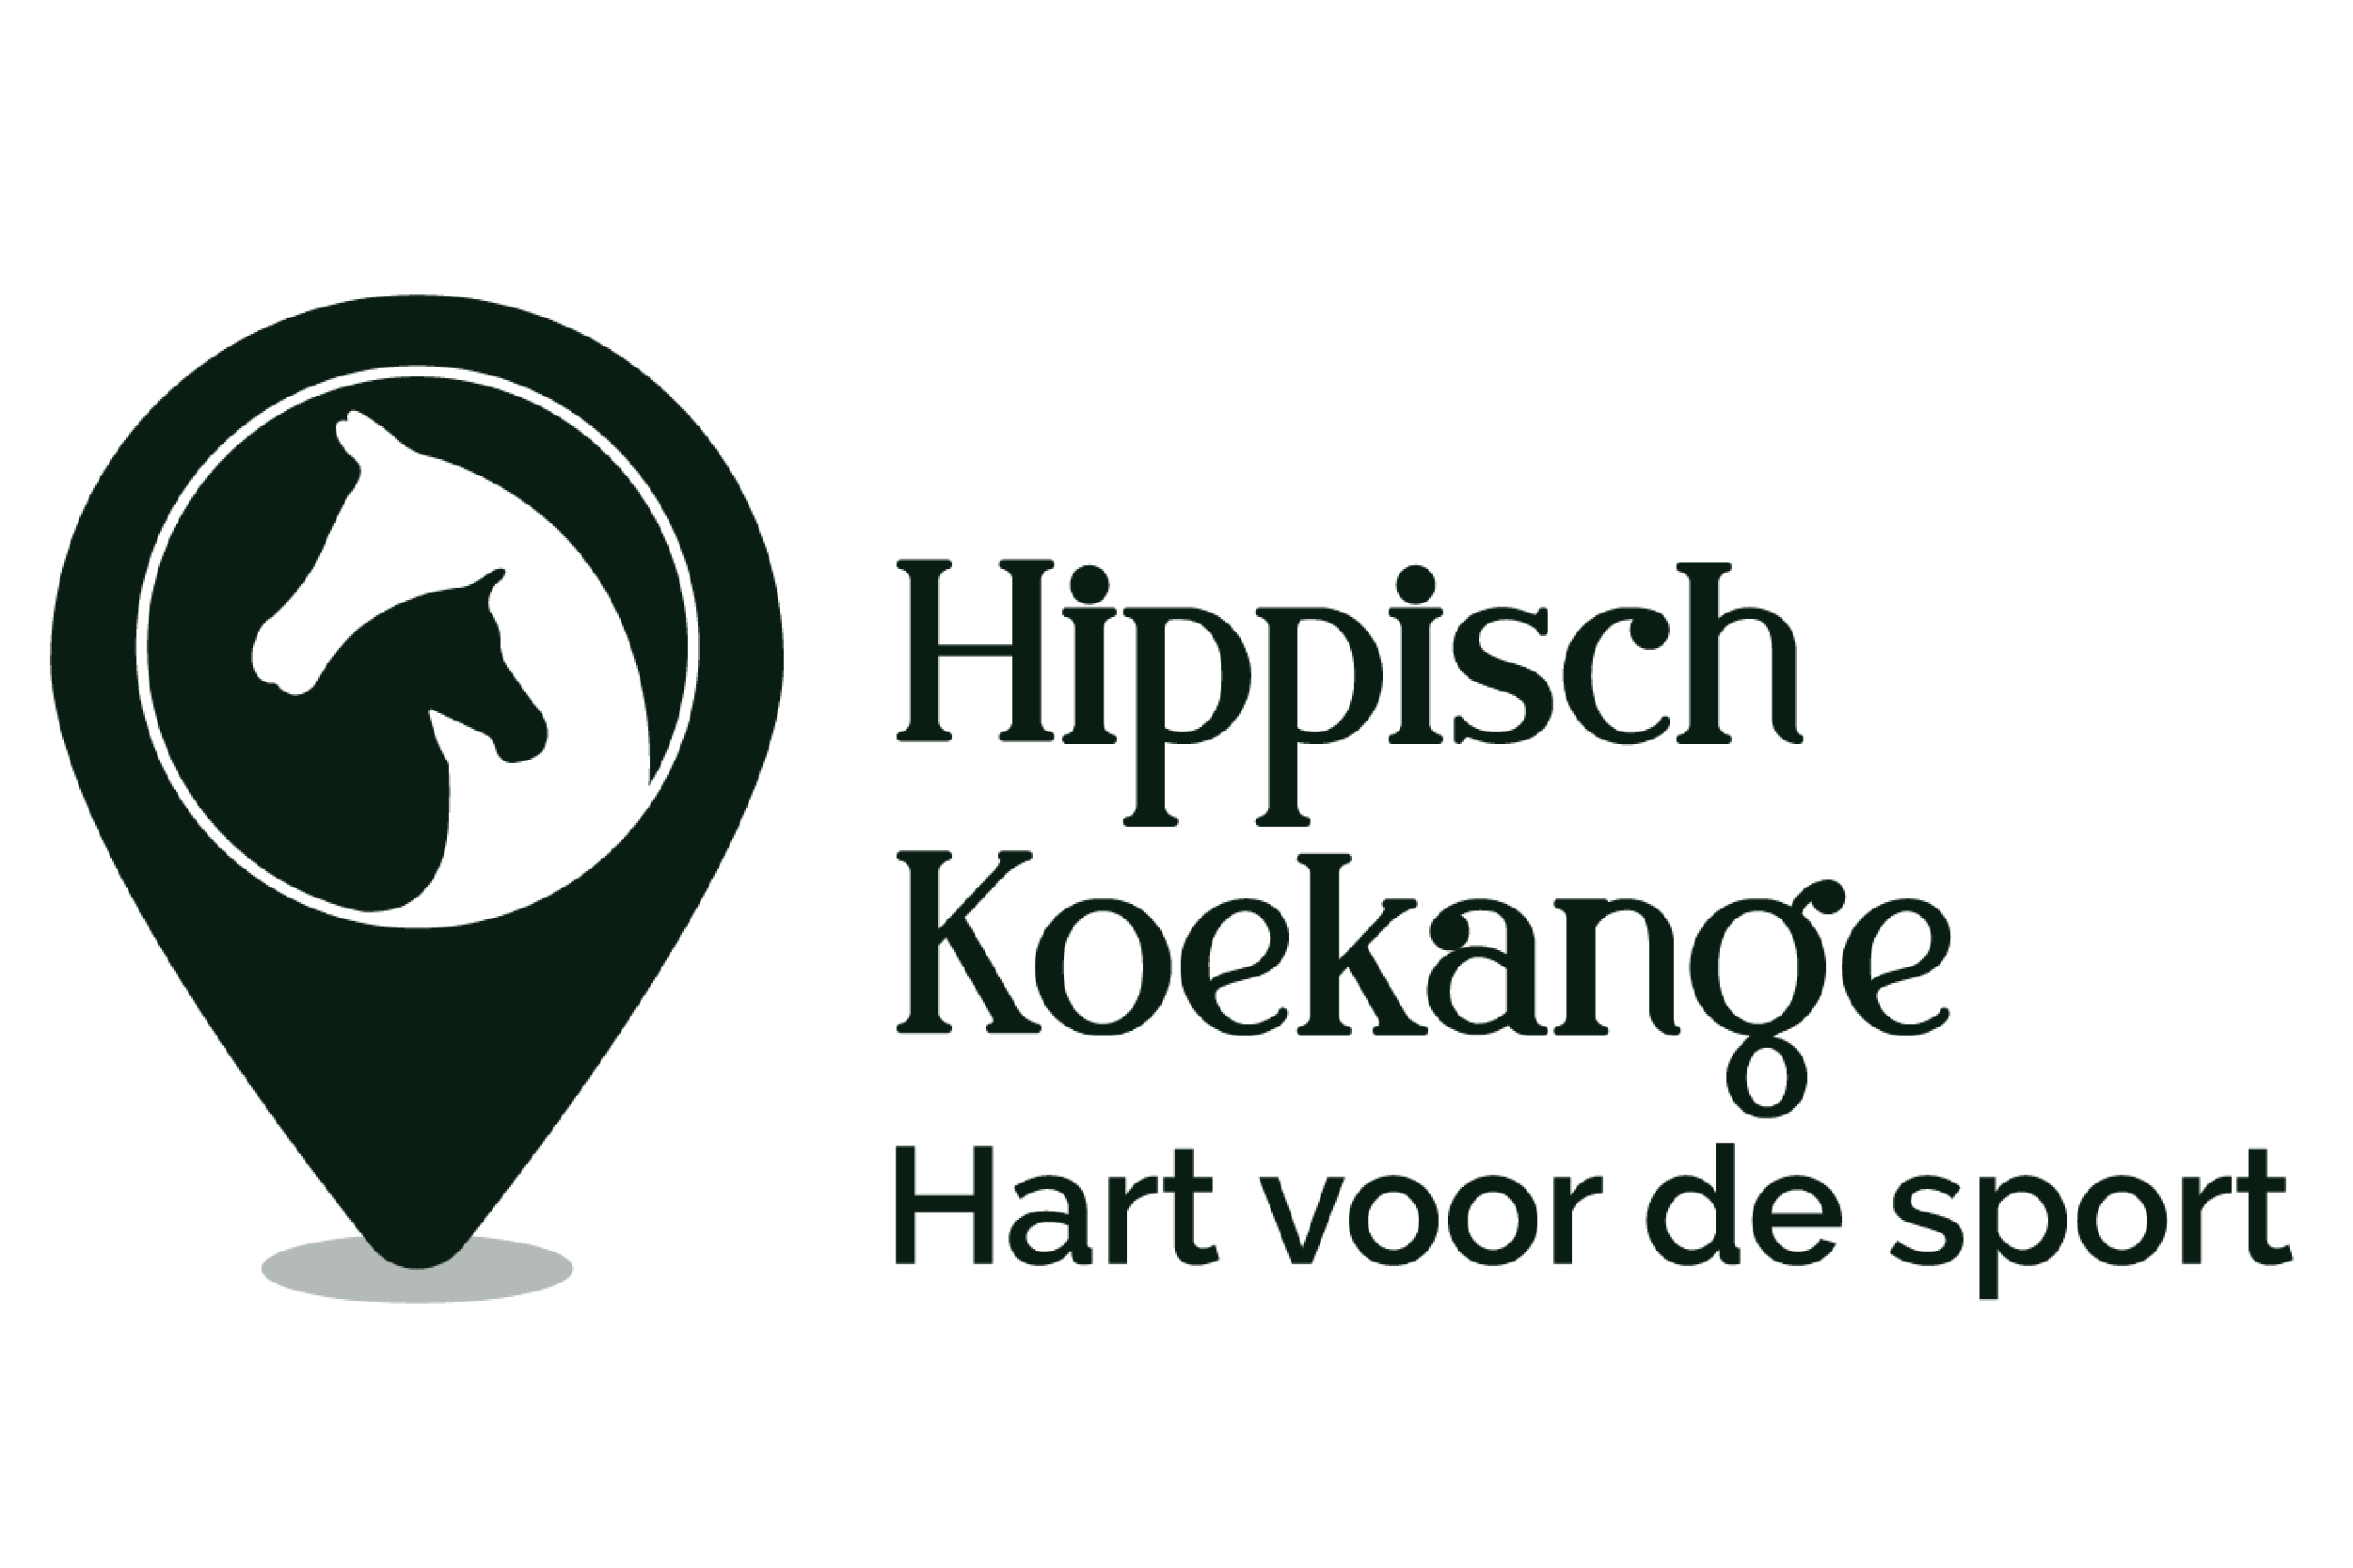 Het logo van Hippisch Koekange